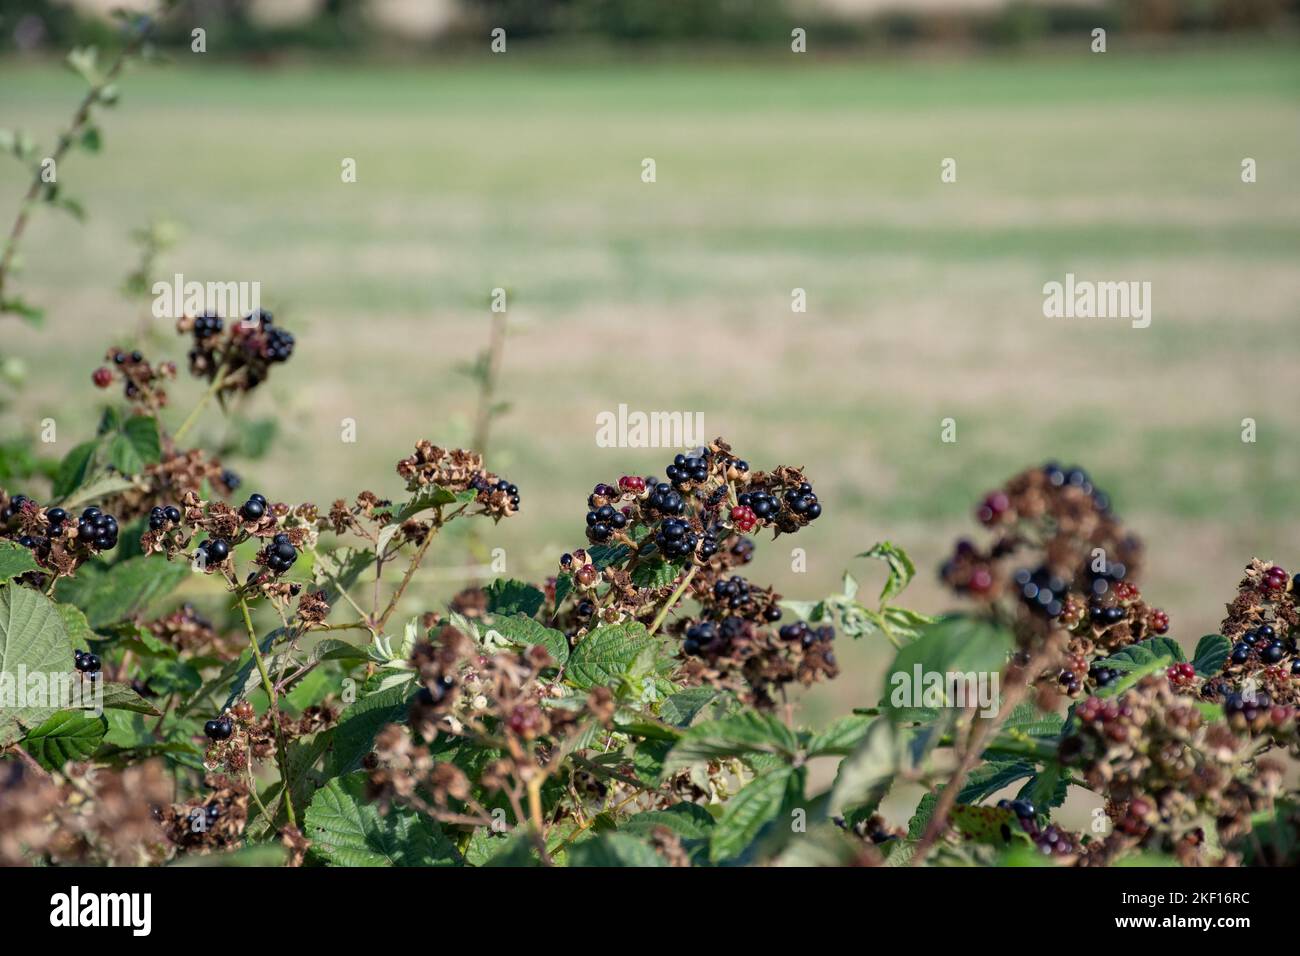 bramble bush is showcasing berries i nthe summer Stock Photo